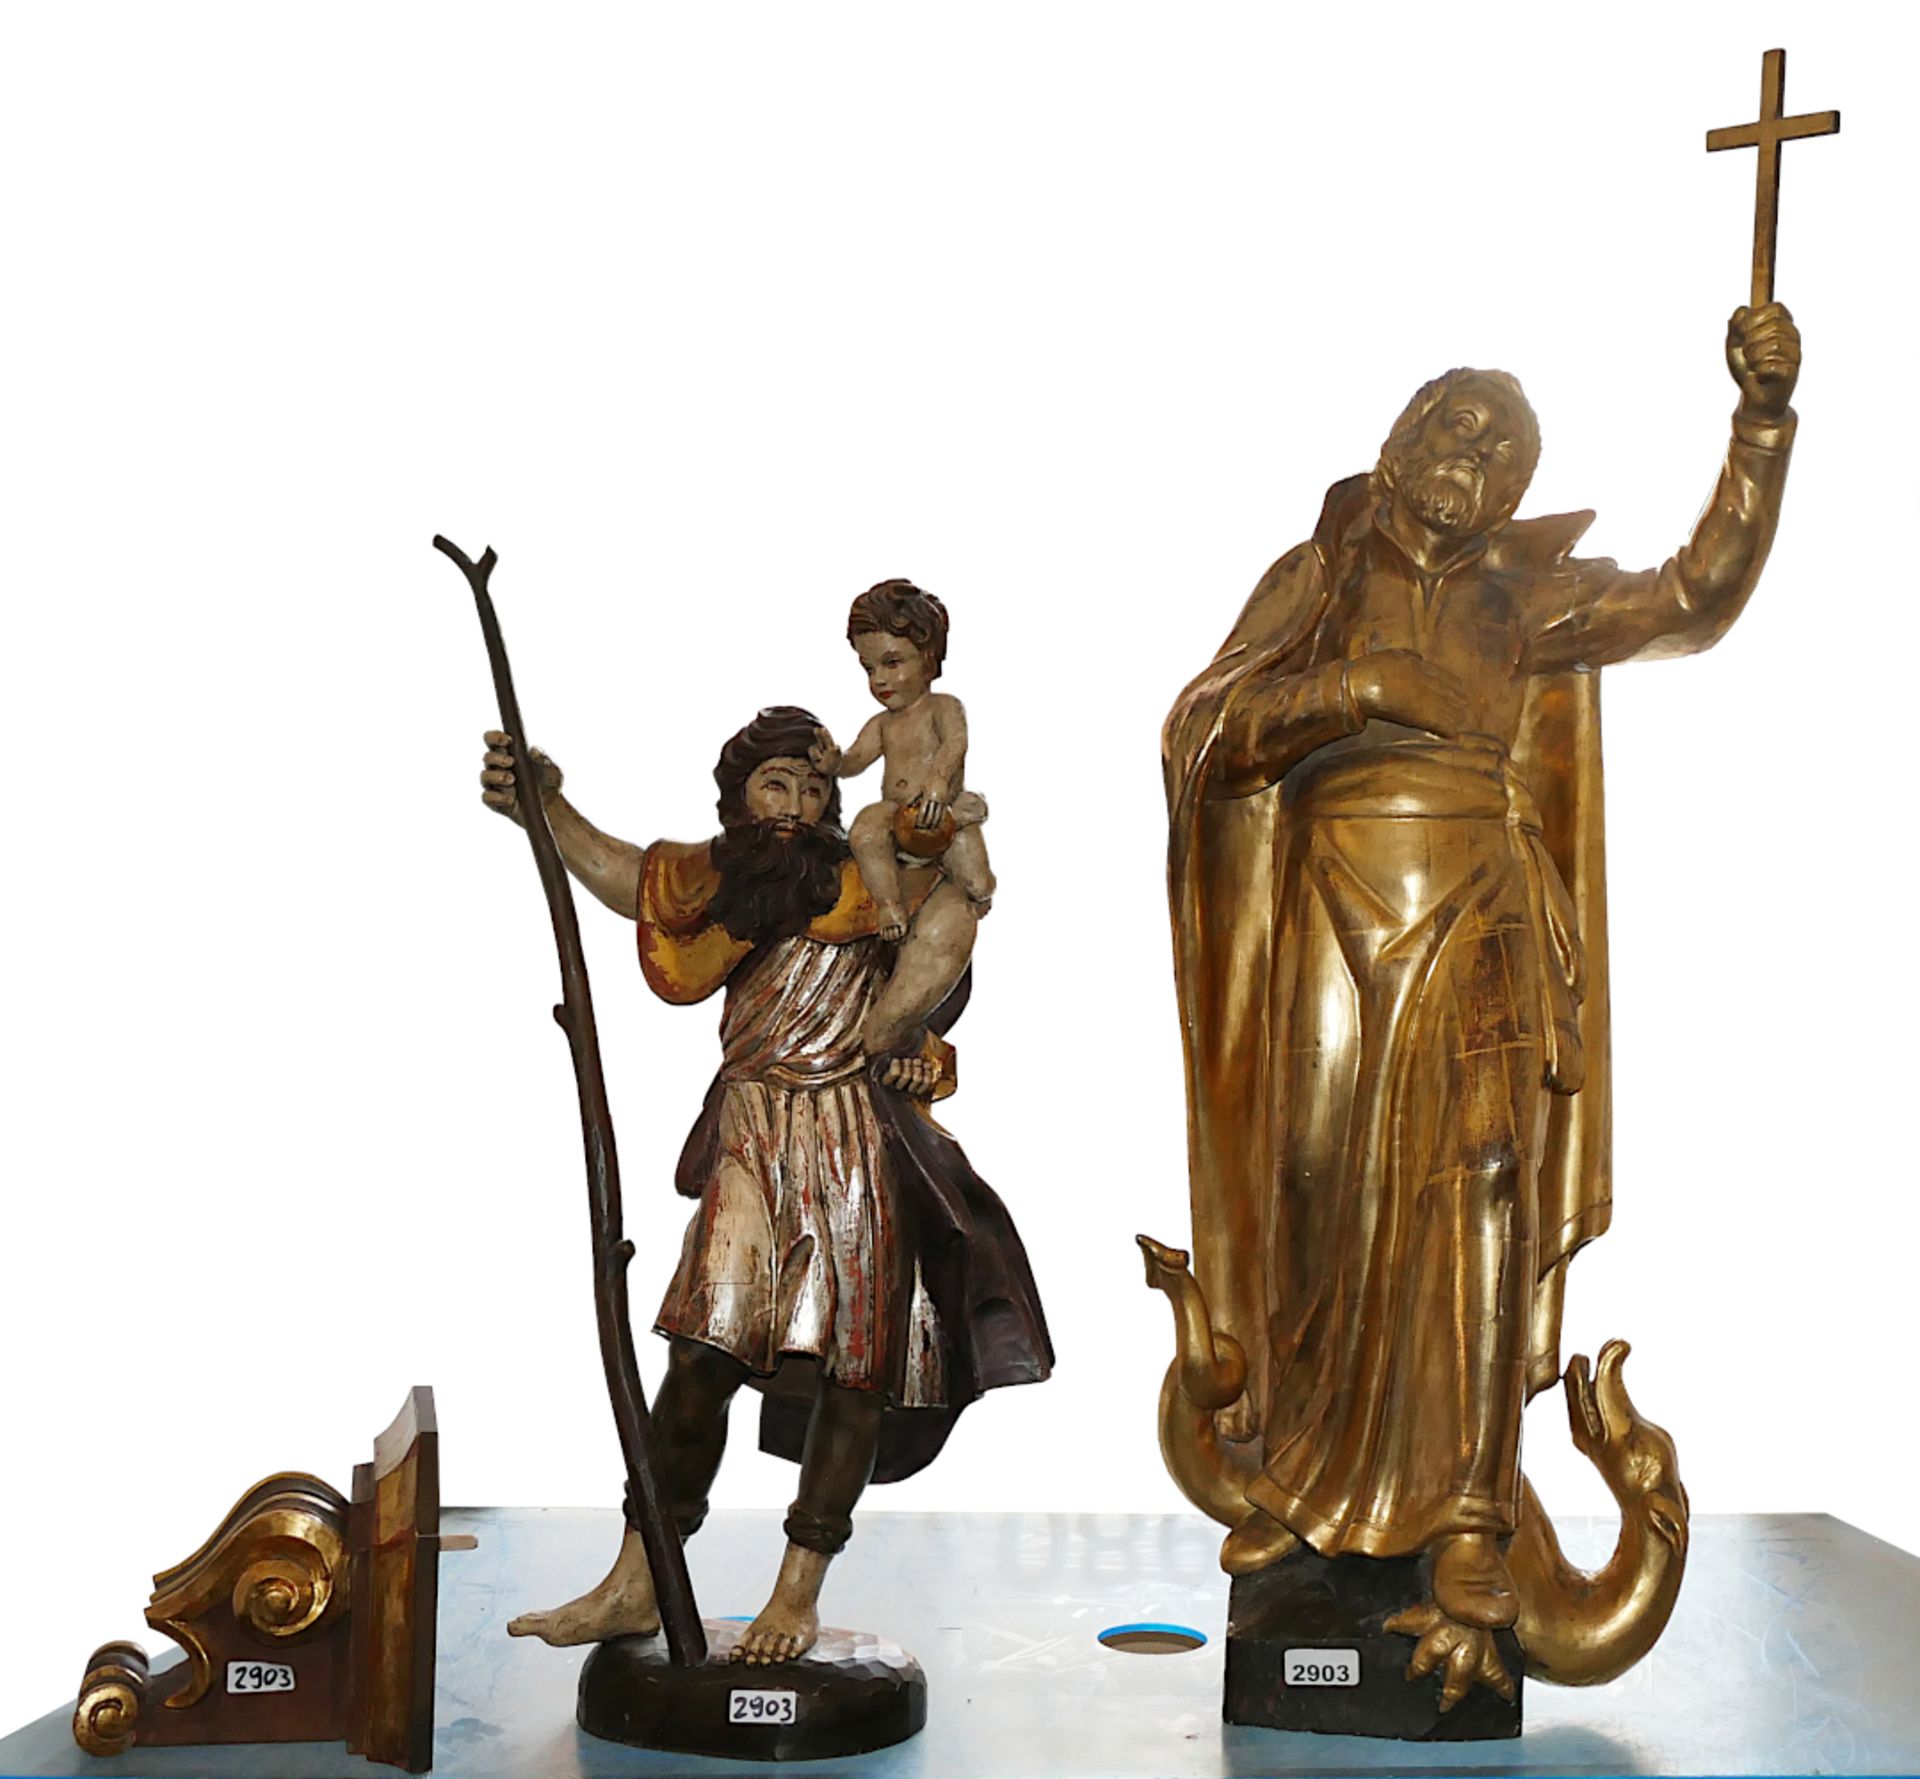 2 Holzfiguren nztl. je Holz farbig gefasst/goldstaffiert: "Heiliger Beatus, Schutzpatron der Schweiz